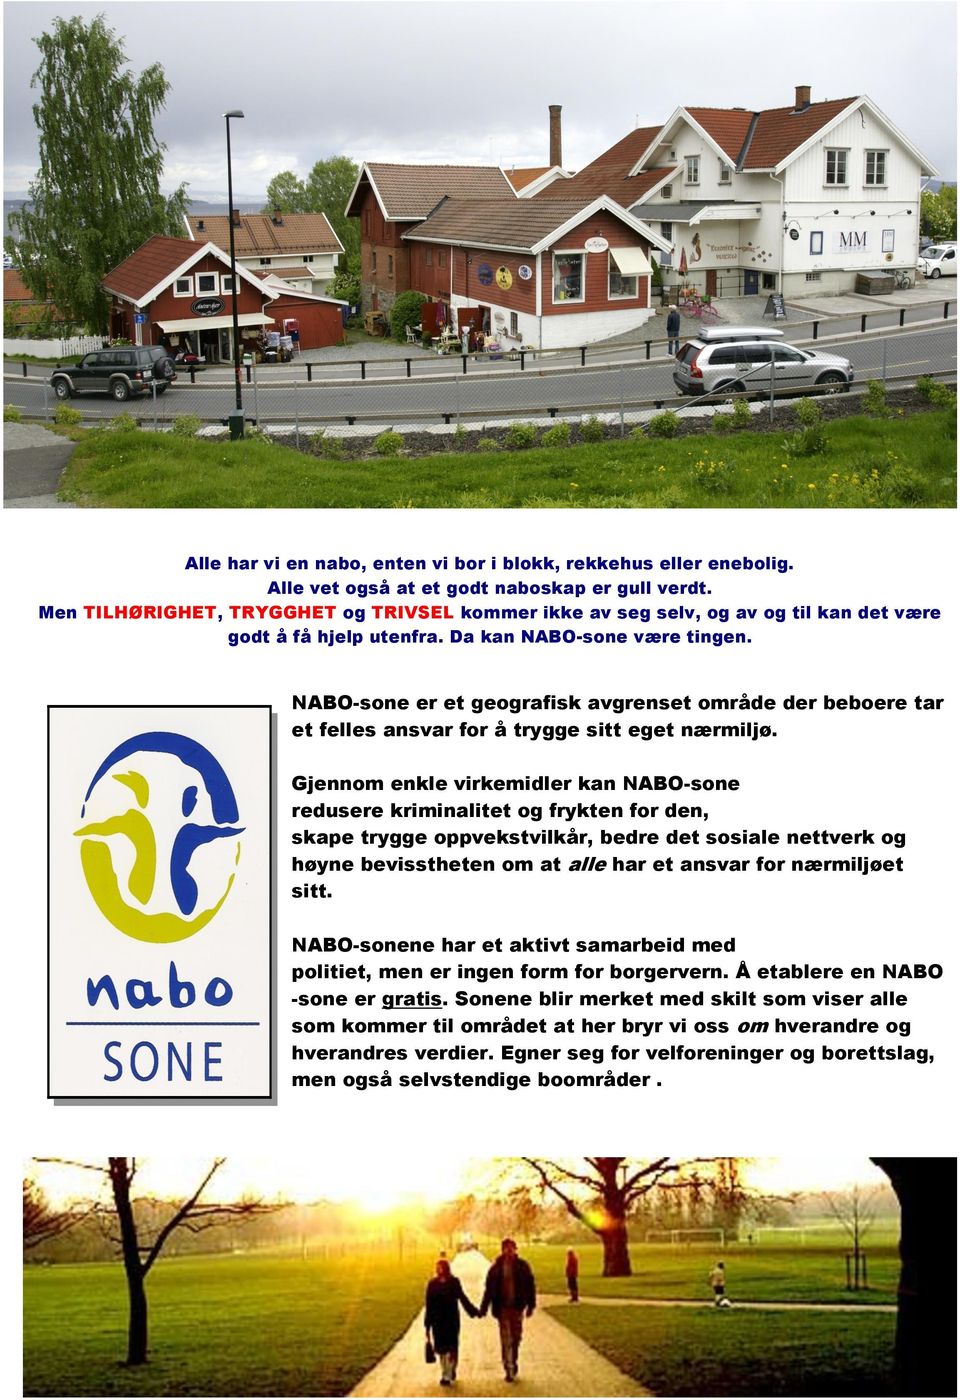 NABO-sone er et geografisk avgrenset område der beboere tar et felles ansvar for å trygge sitt eget nærmiljø.